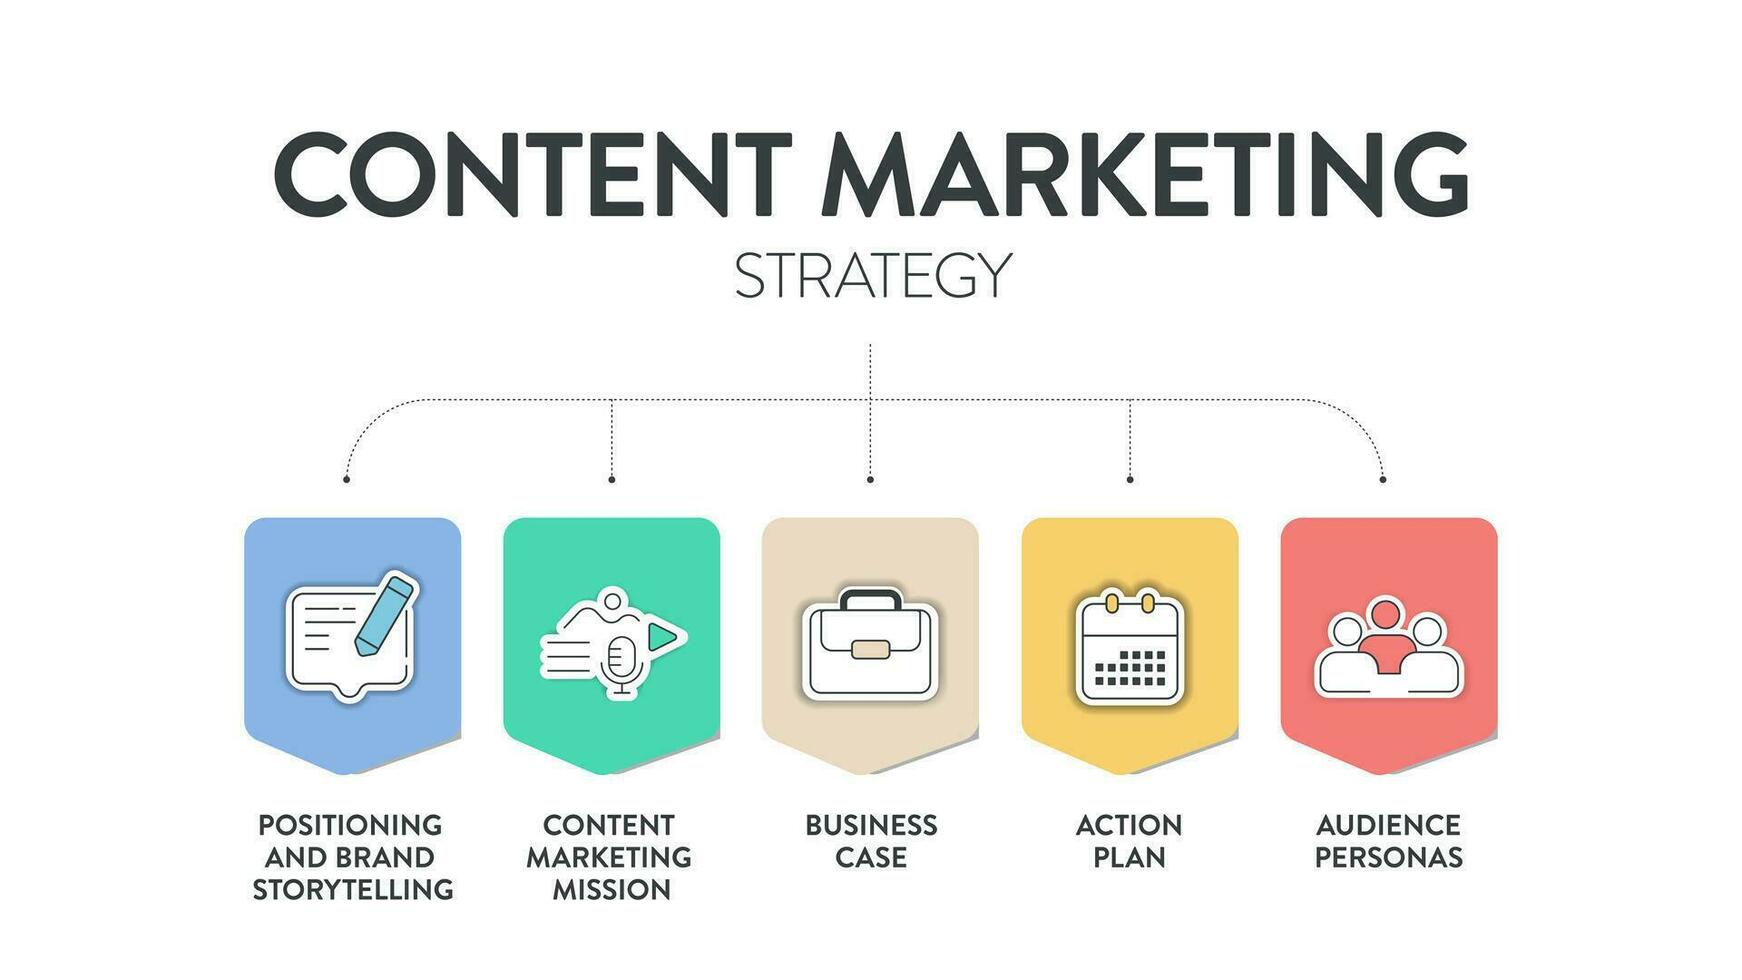 conteúdo marketing estratégia modelo gráfico diagrama infográfico modelo com ícone vetor tem posicionamento e marca narrativa, conteúdo marketing missão, o negócio caso, açao plano e público personas